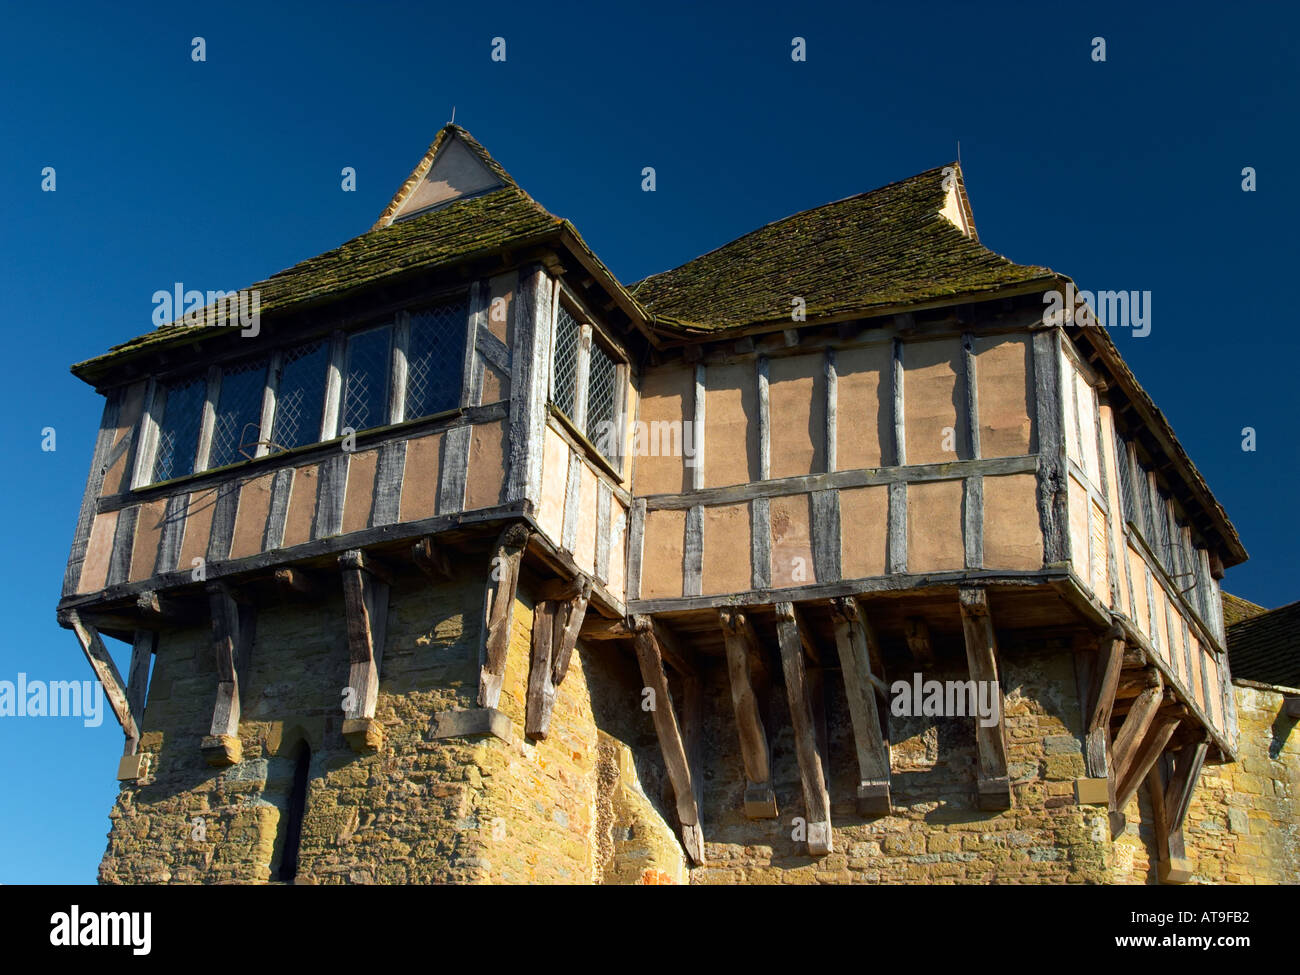 Stokesay Schloß Shropshire England befestigten 13. Jahrhundert Herrenhaus, jetzt im Besitz von English Heritage Stockfoto